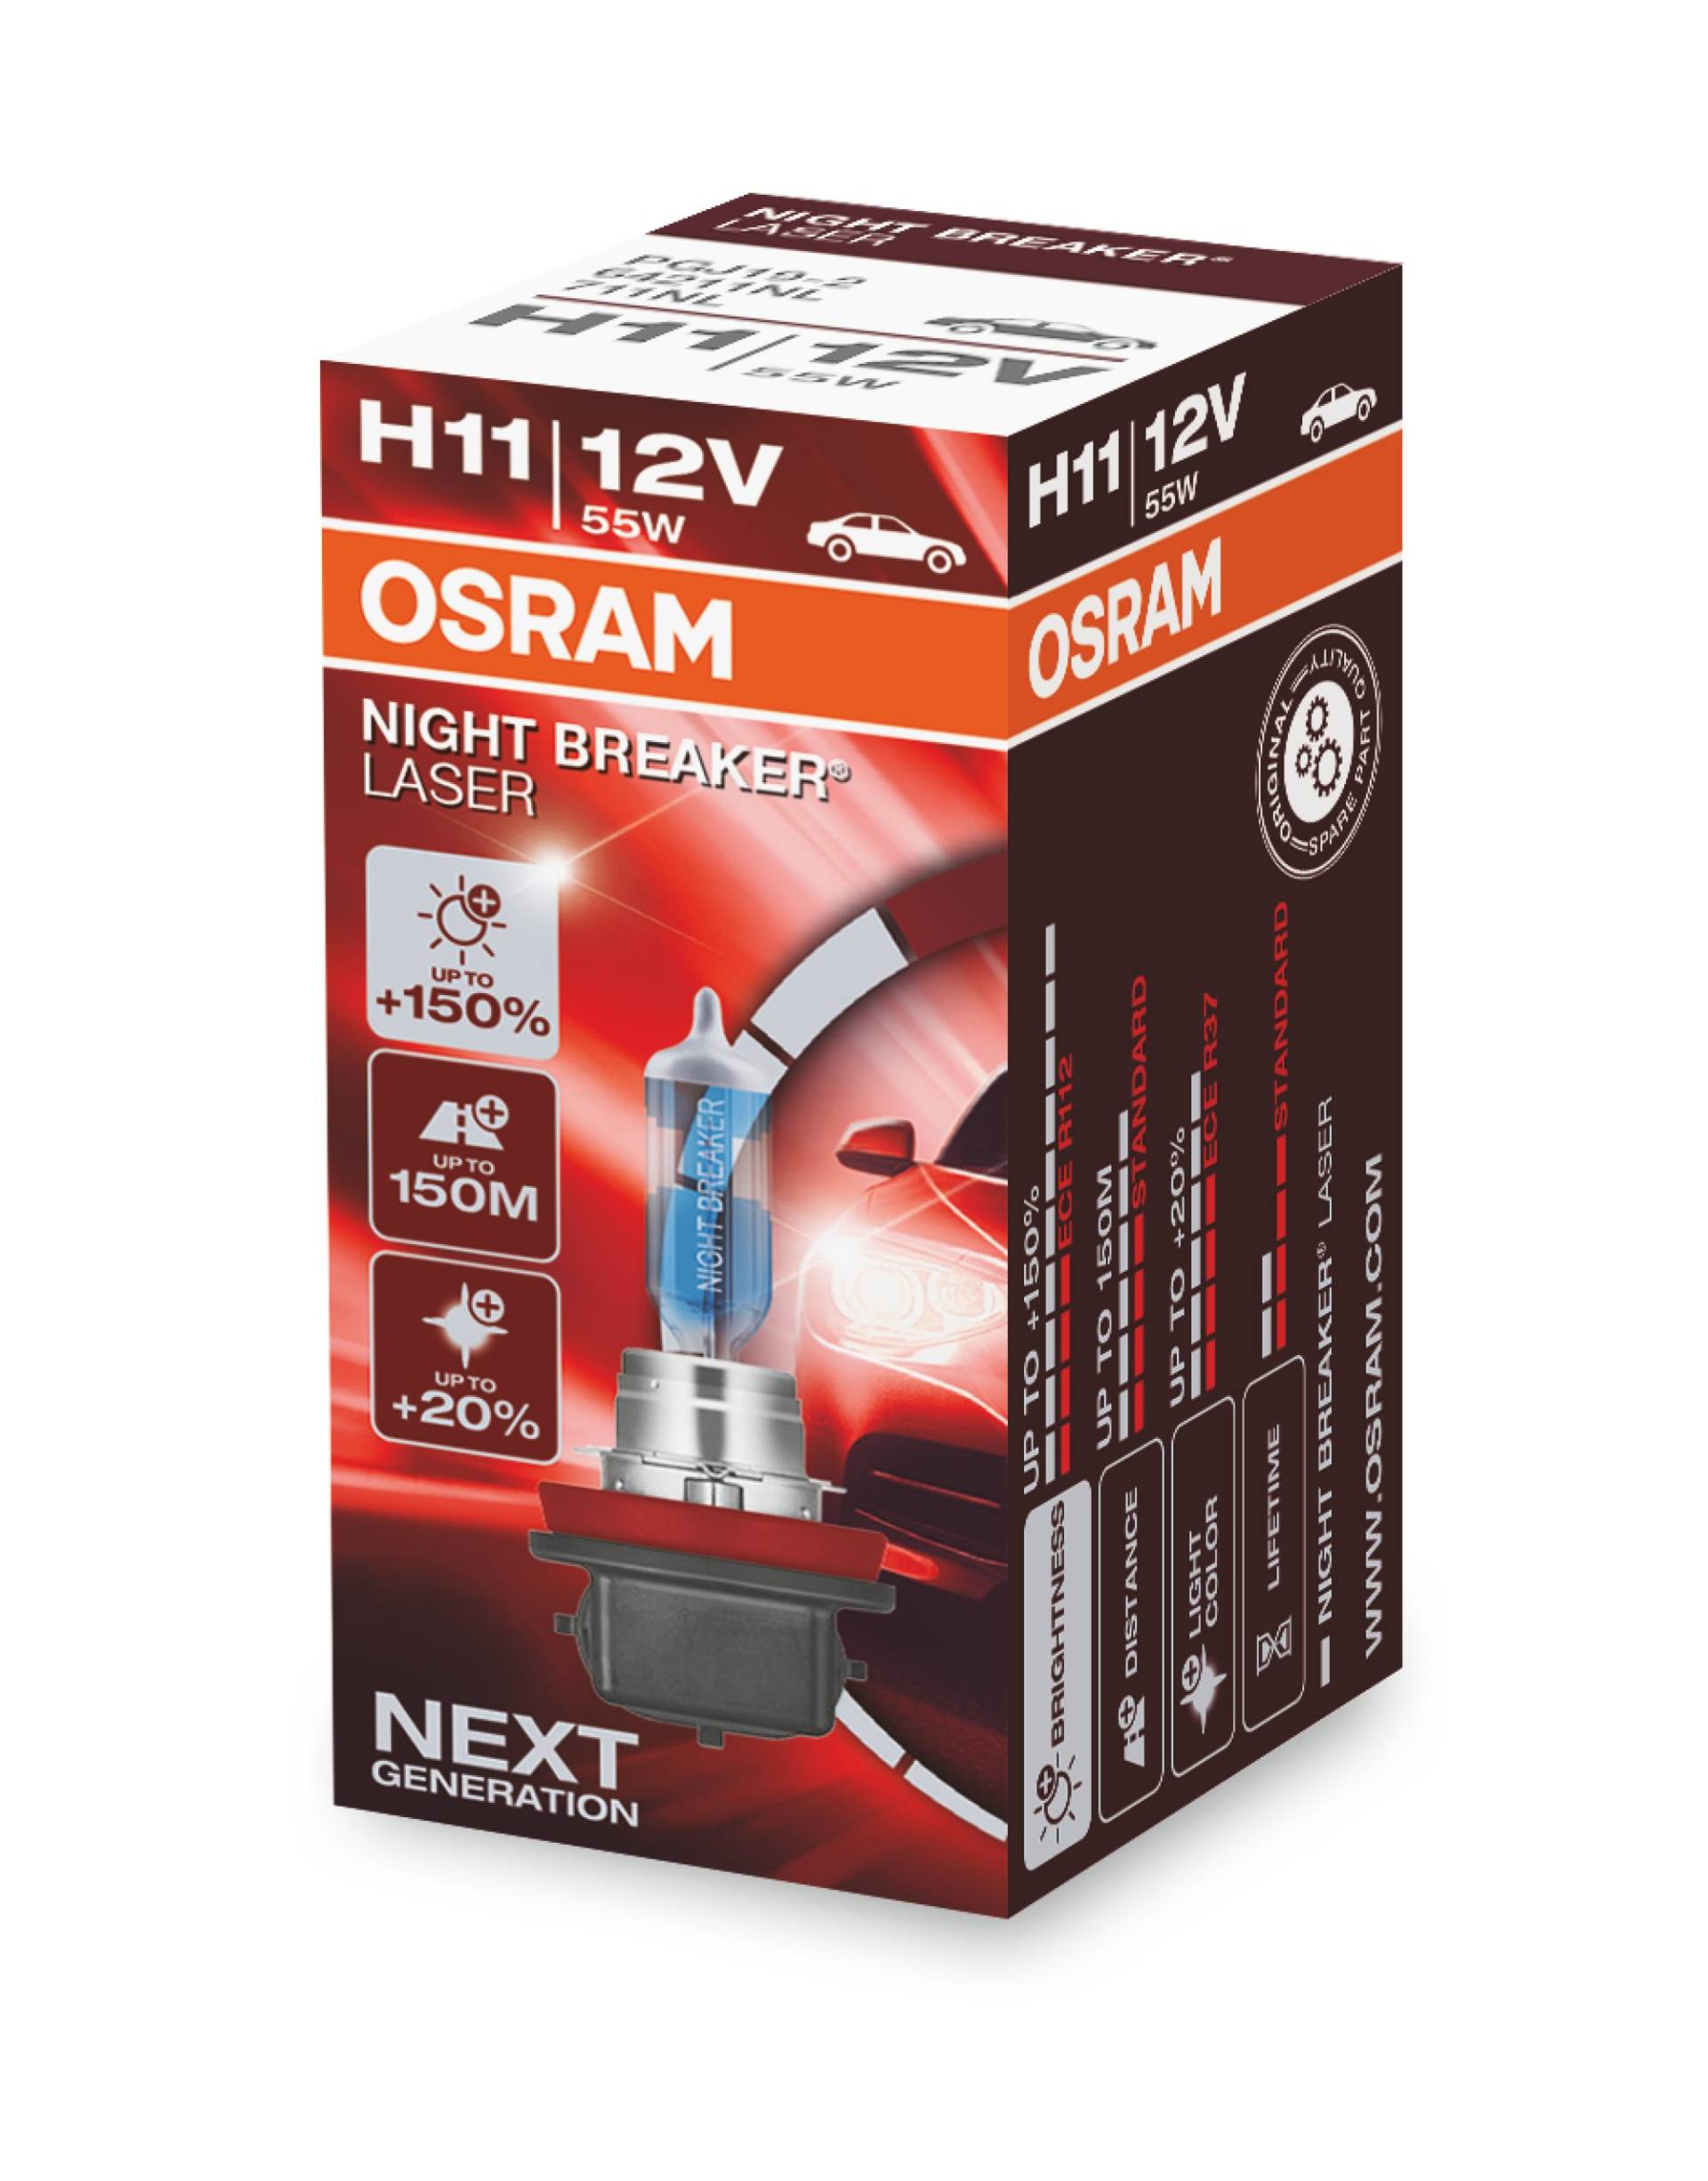 OSRAM NIGHT BREAKER LASER H11, +150% mehr Helligkeit, Halogen-Scheinwerferlampe, 64211NL, 12V PKW, Faltschachtel (1 Lampe) von Osram